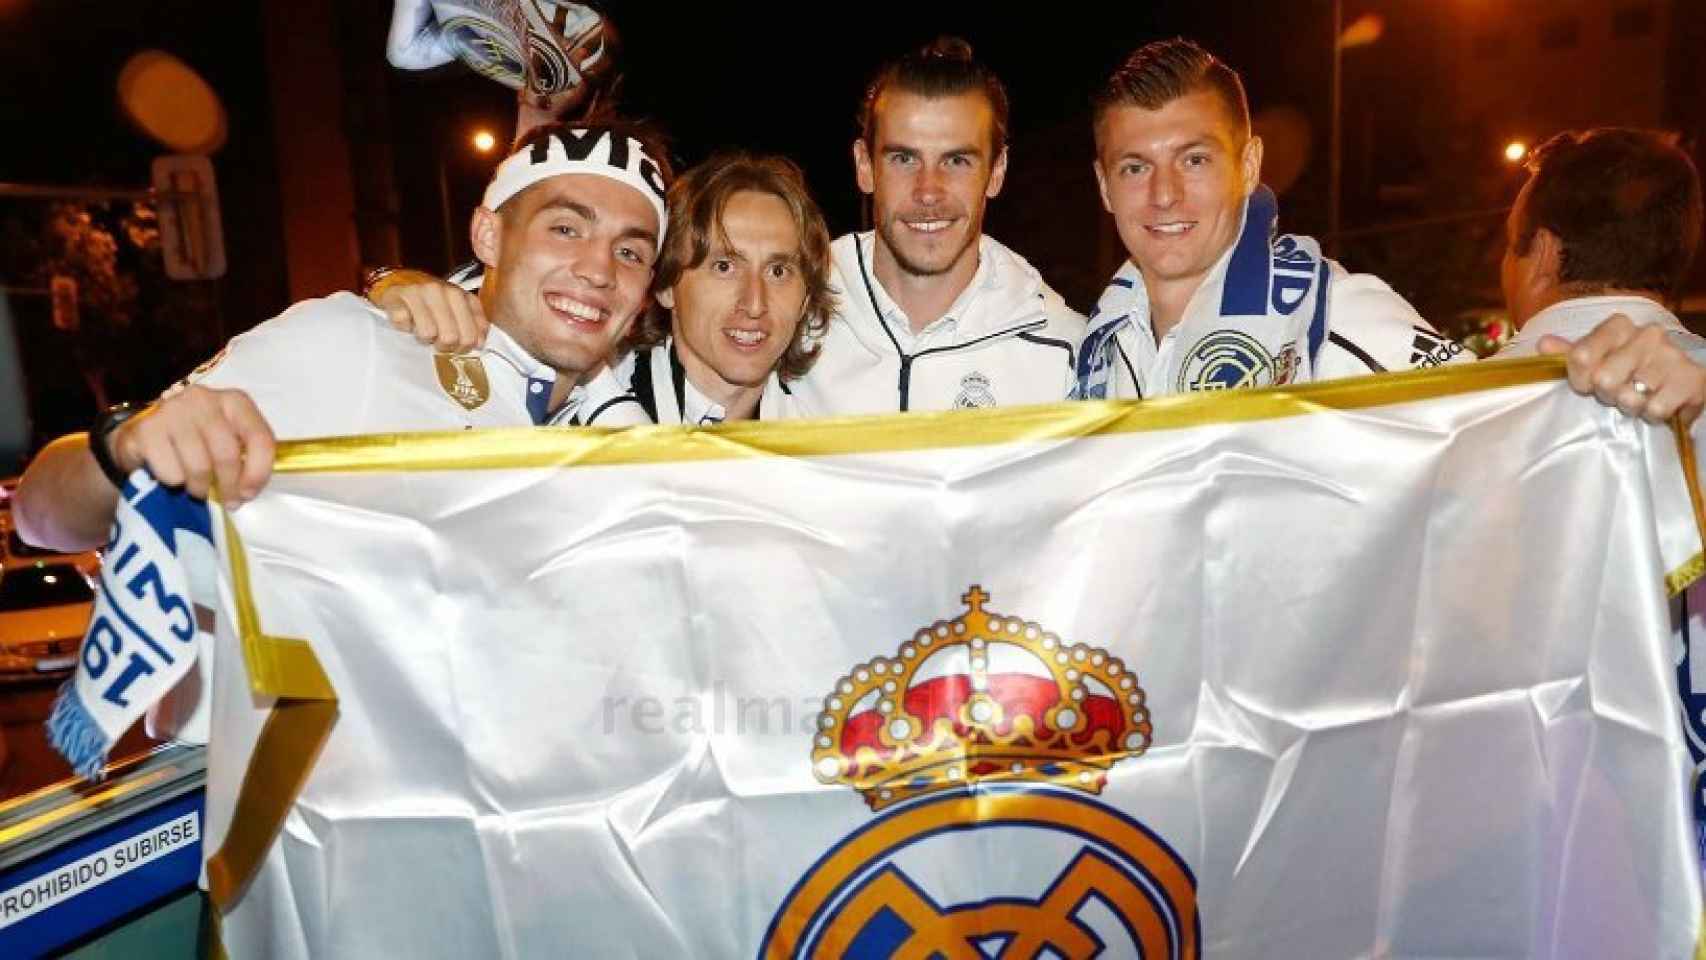 Kovacic, Kroos, Modric y Bale festejan en Cibeles con la bandera del Real Madrid